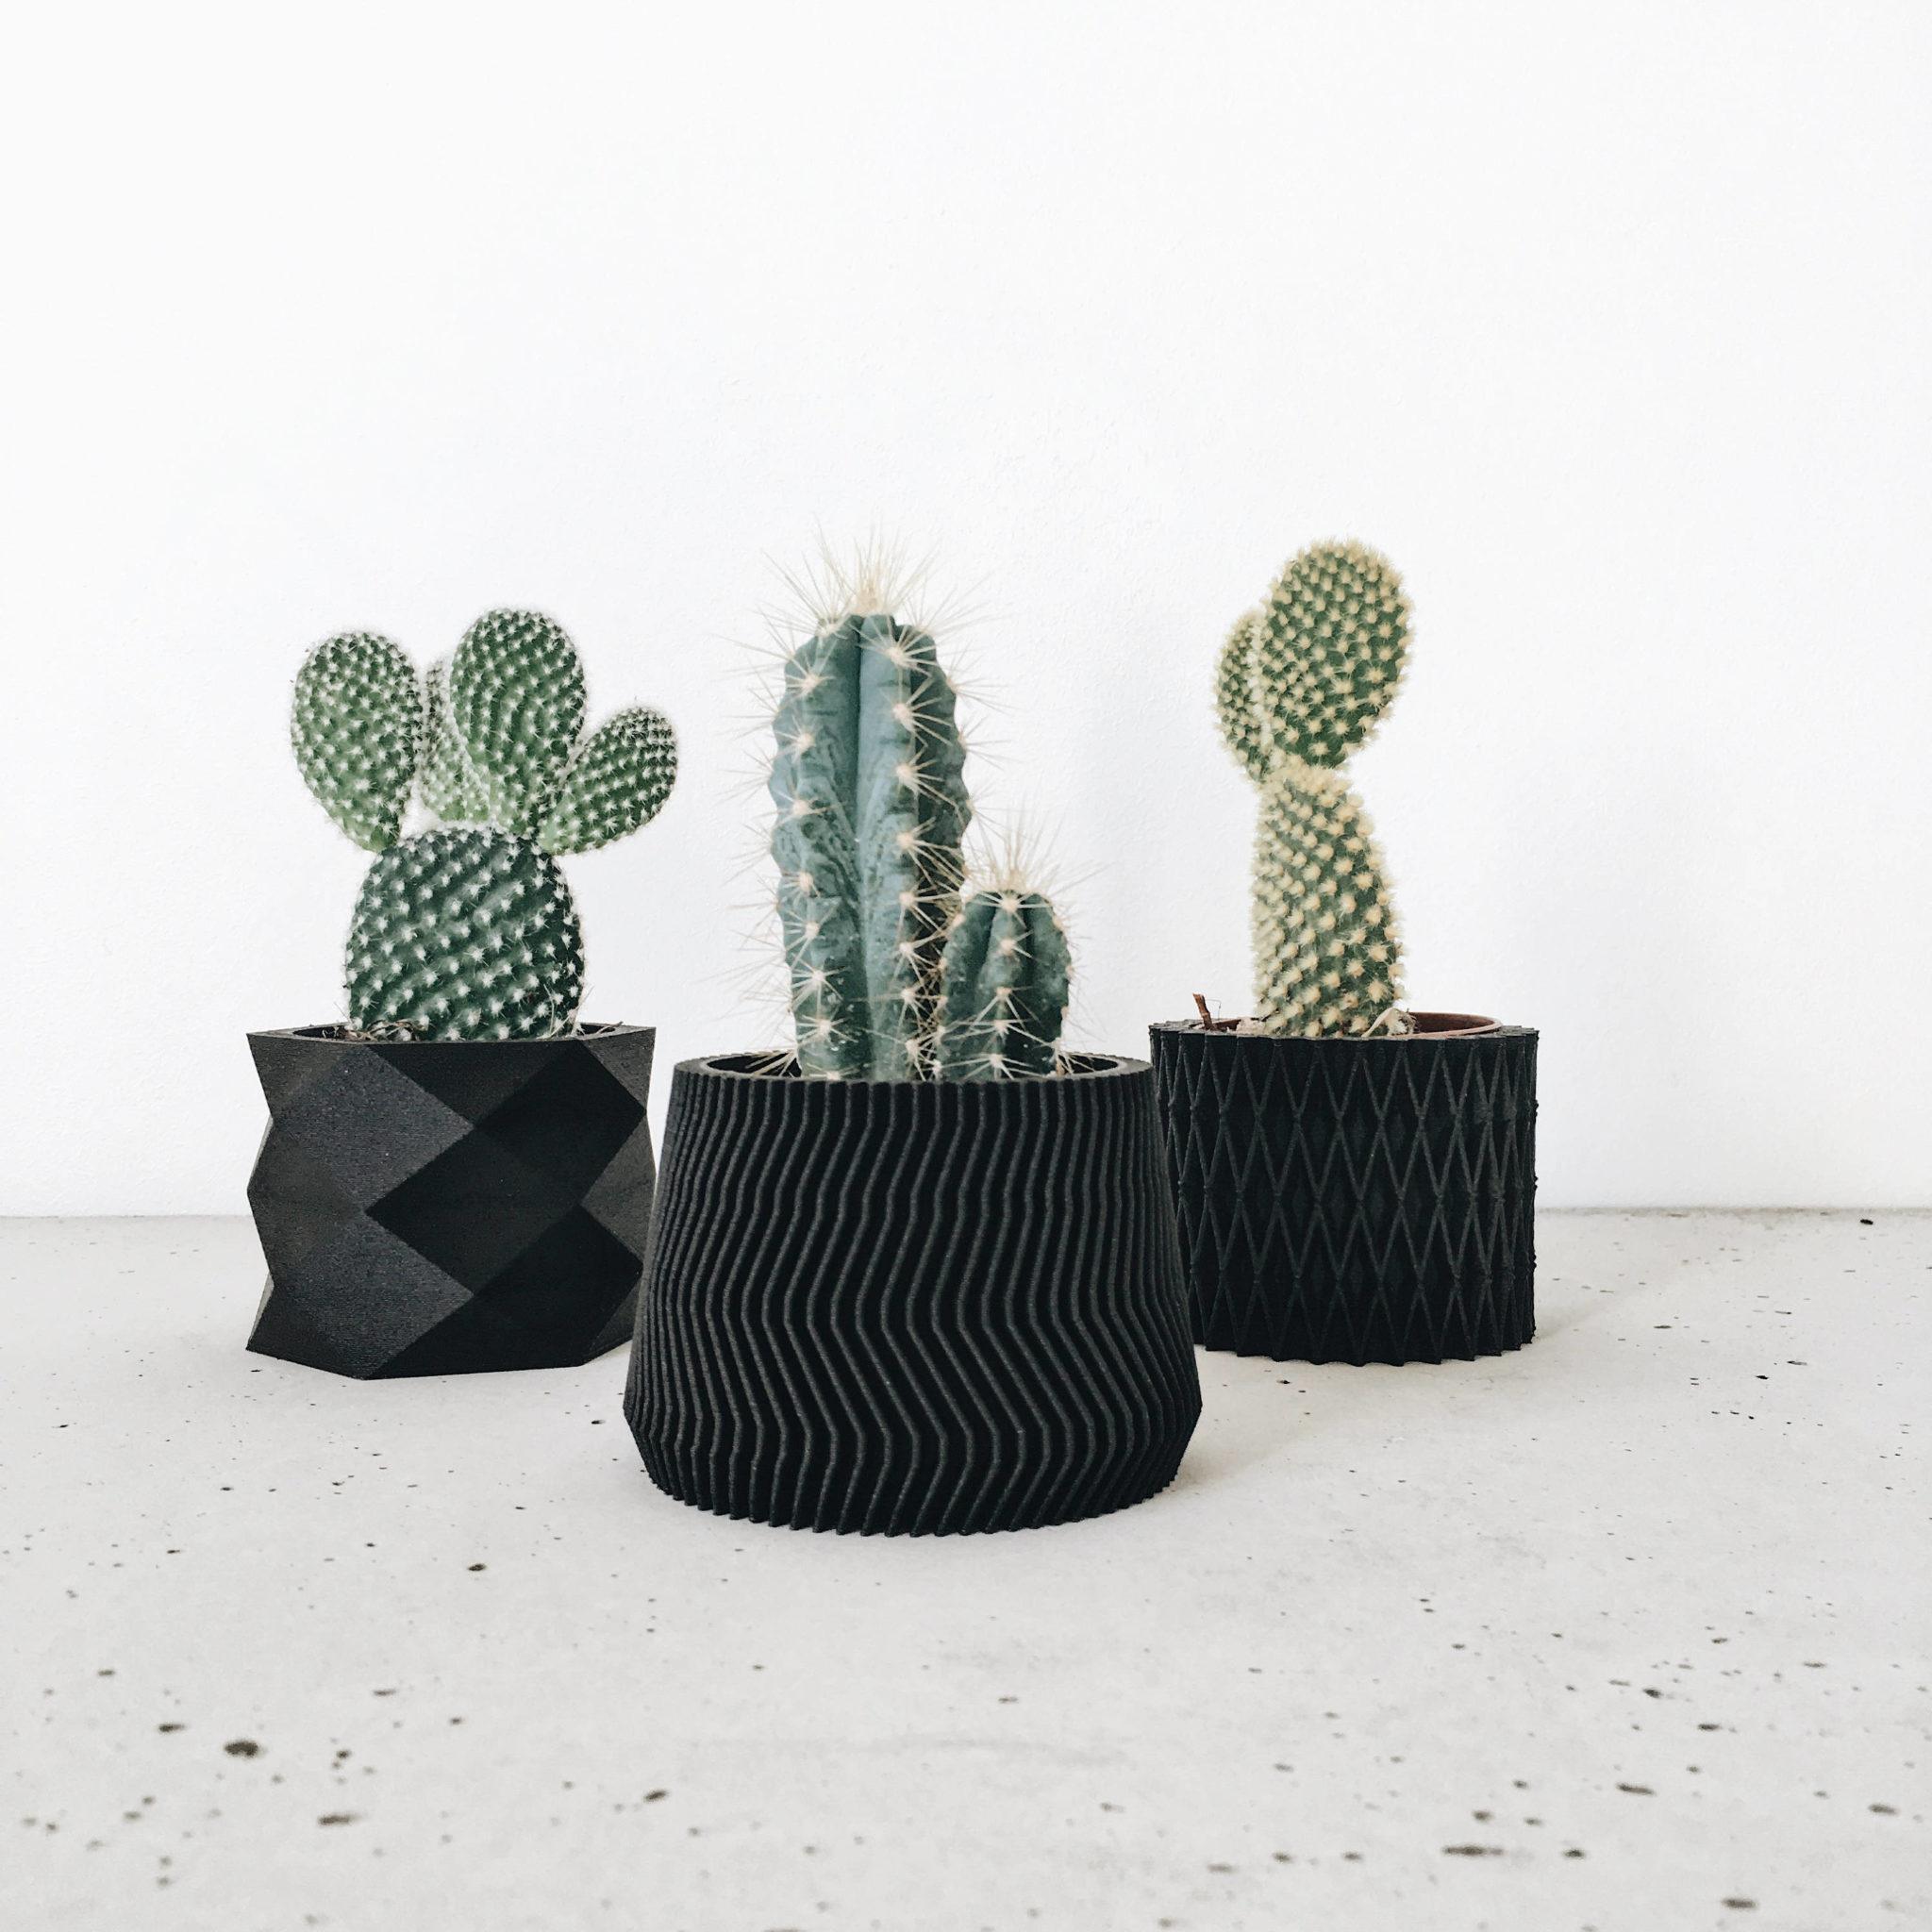 Set of 3 black planters - Diamant Savane Croix - Minimum Design 